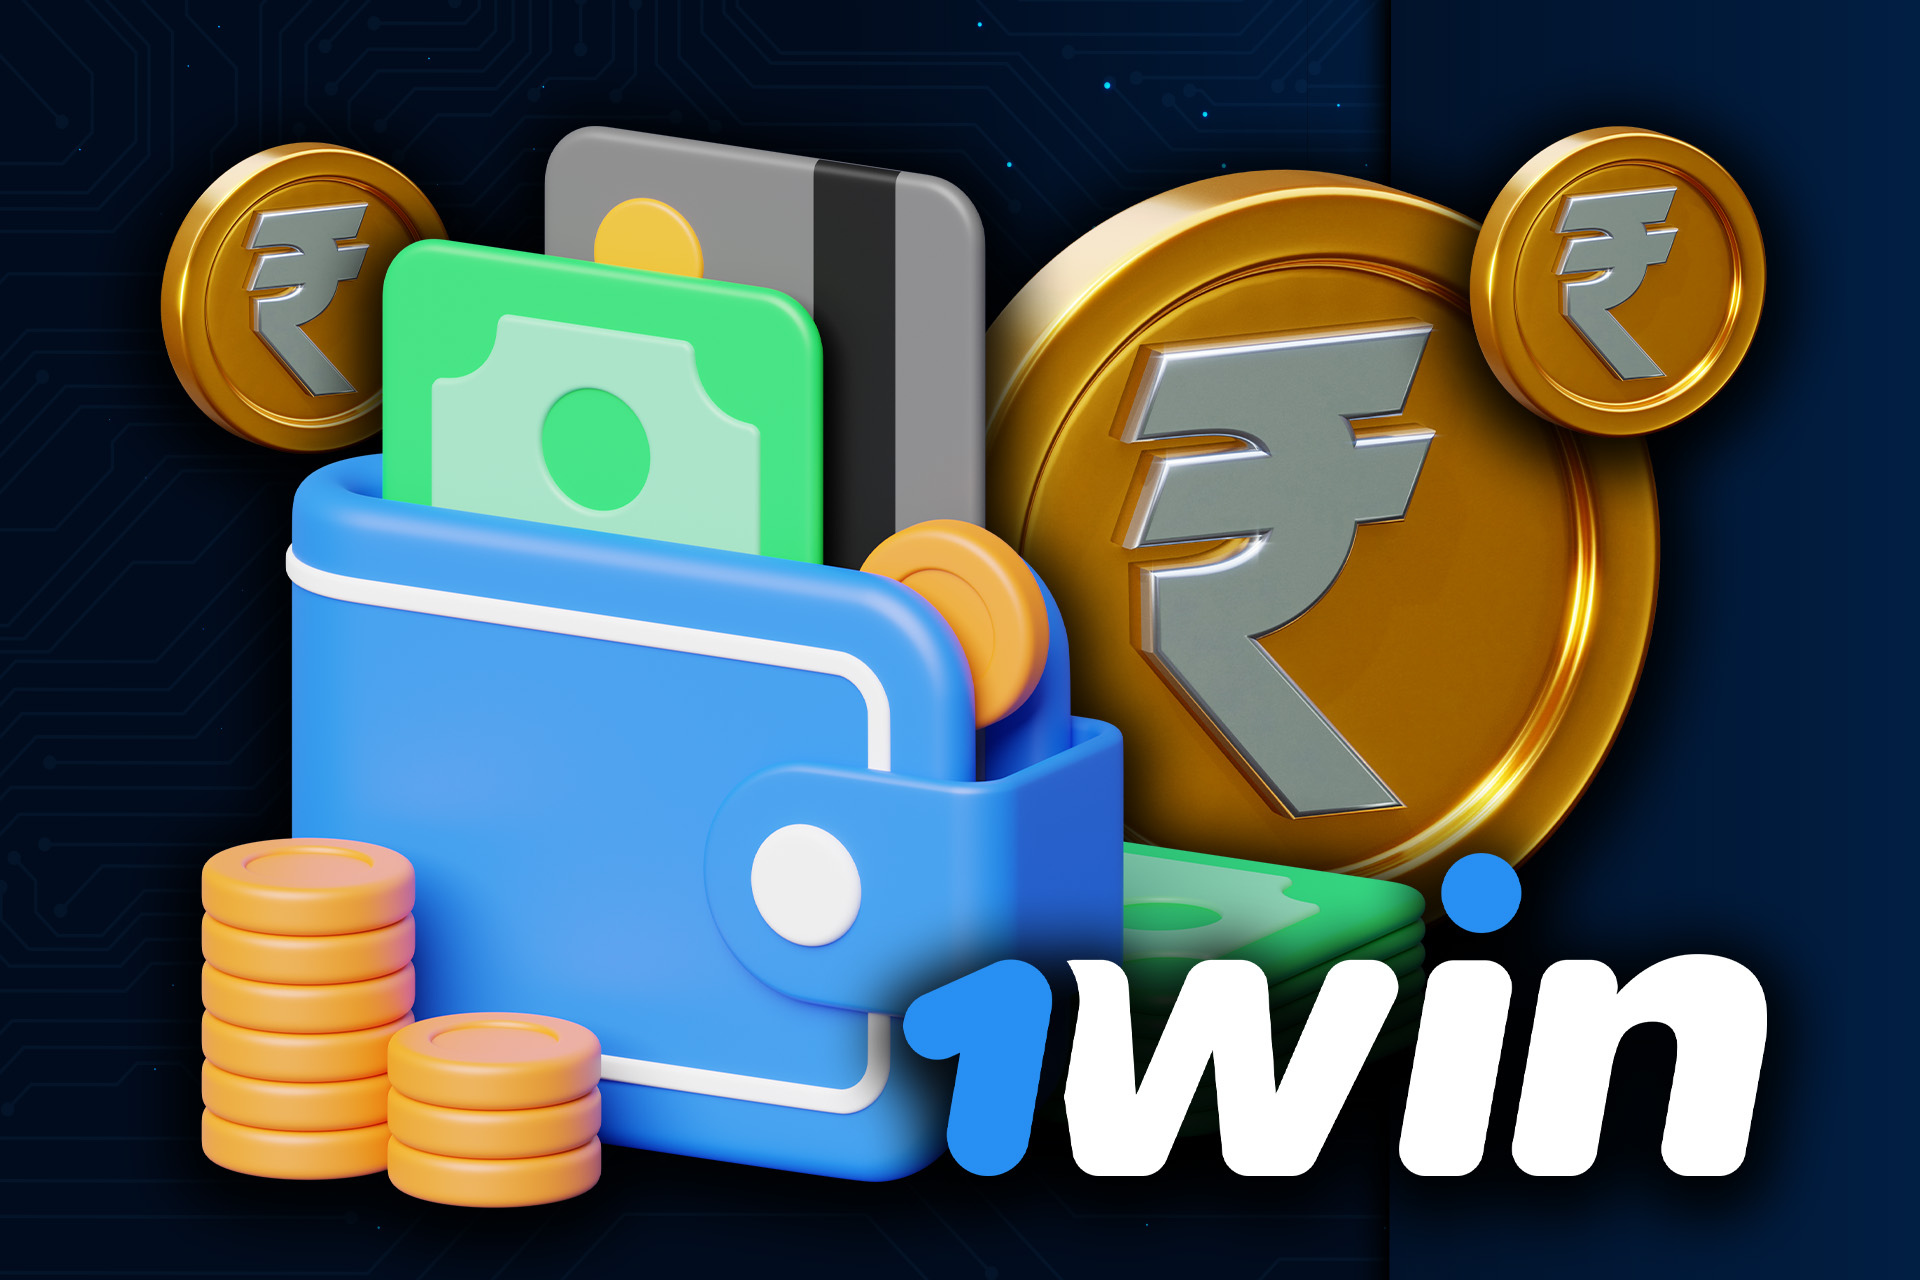 1win dispone de varios métodos para retirar dinero.